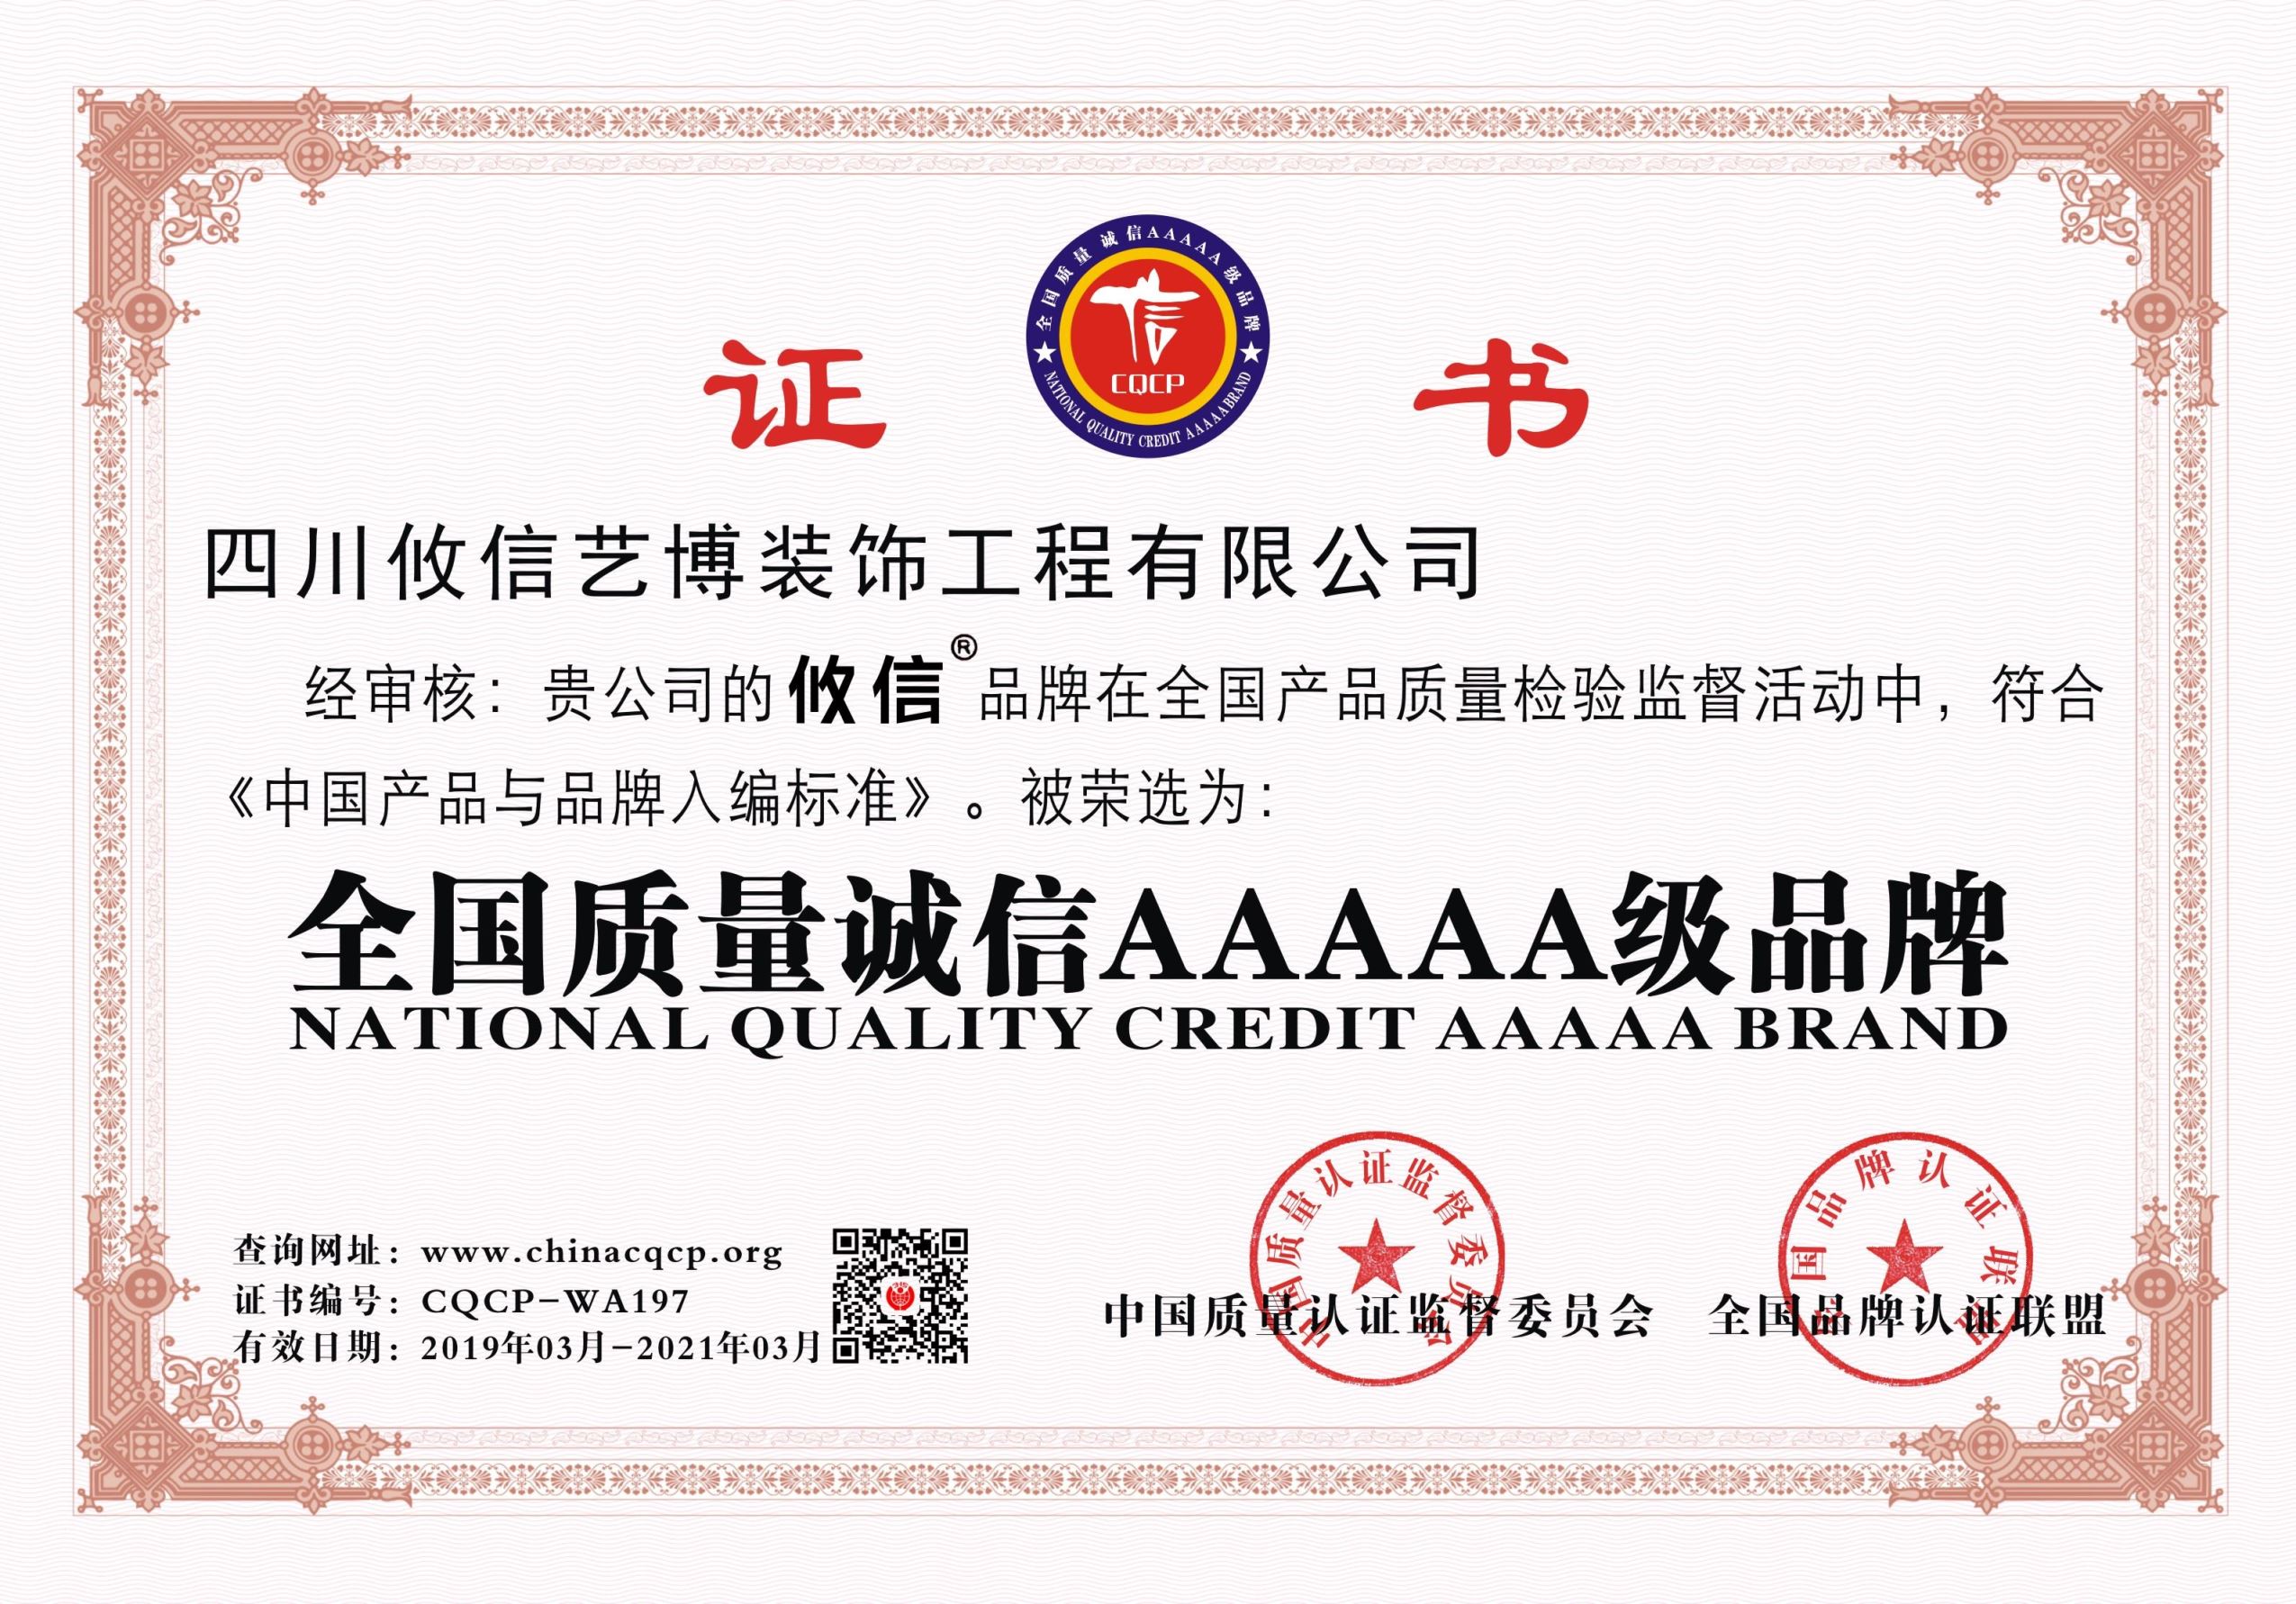 四川攸信丨合江名邸装饰企业荣誉荣获”中国质量诚信AAAAA级品牌”“